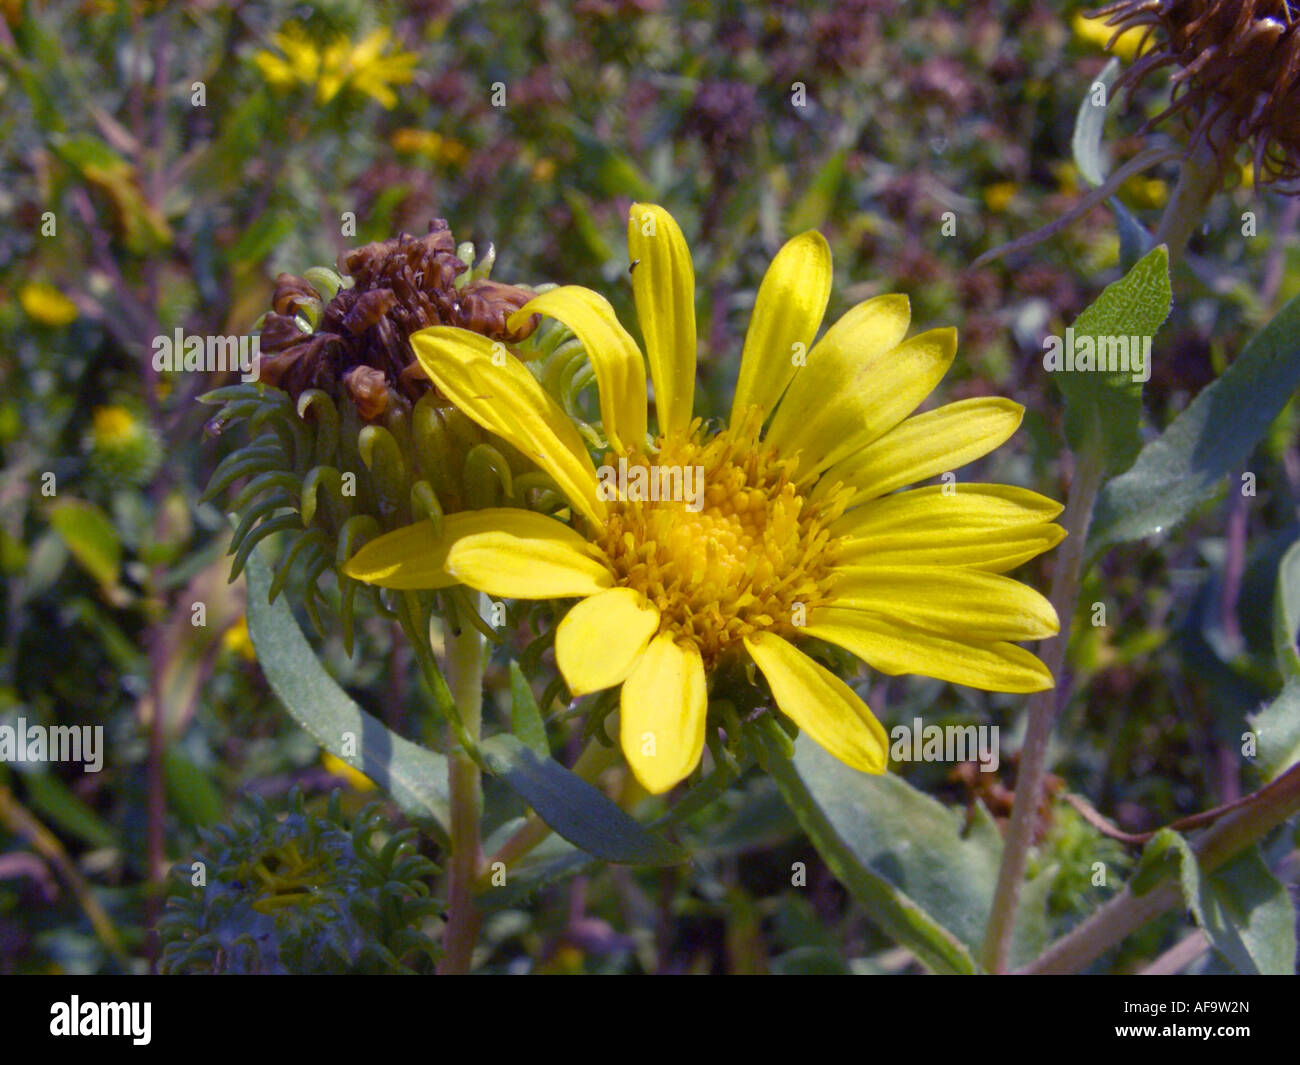 Hardy Grindelia, Scaly grindelia, Gumplant, Gumweed (Grindelia robusta), inflorescence Stock Photo